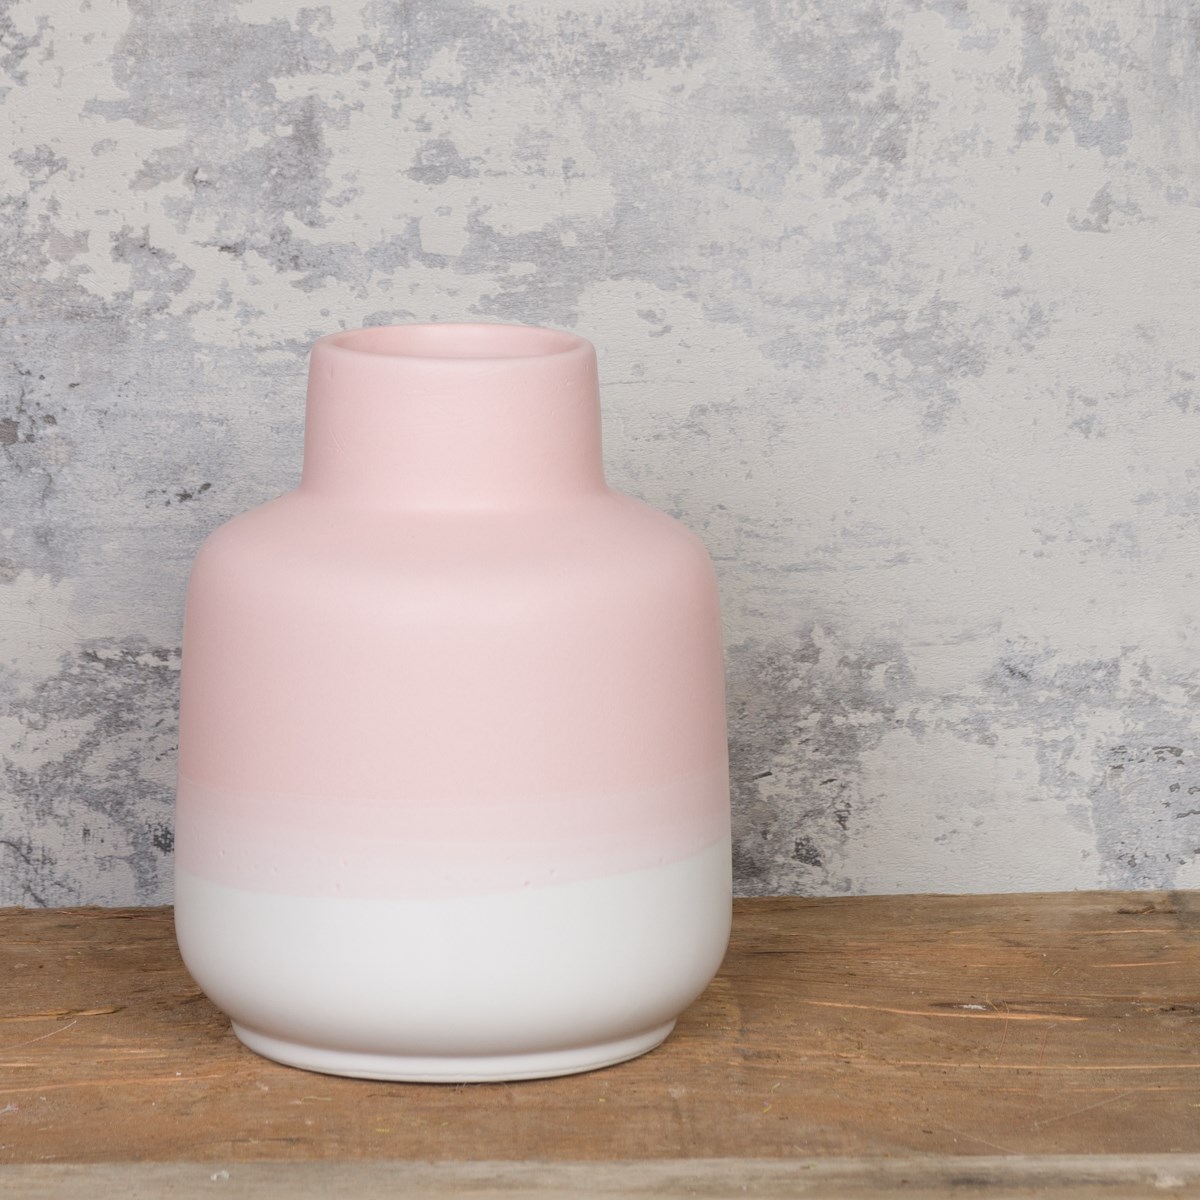 Sammenbrud velordnet En begivenhed Two-Tone Ceramic Vase Pink | Floralsilk